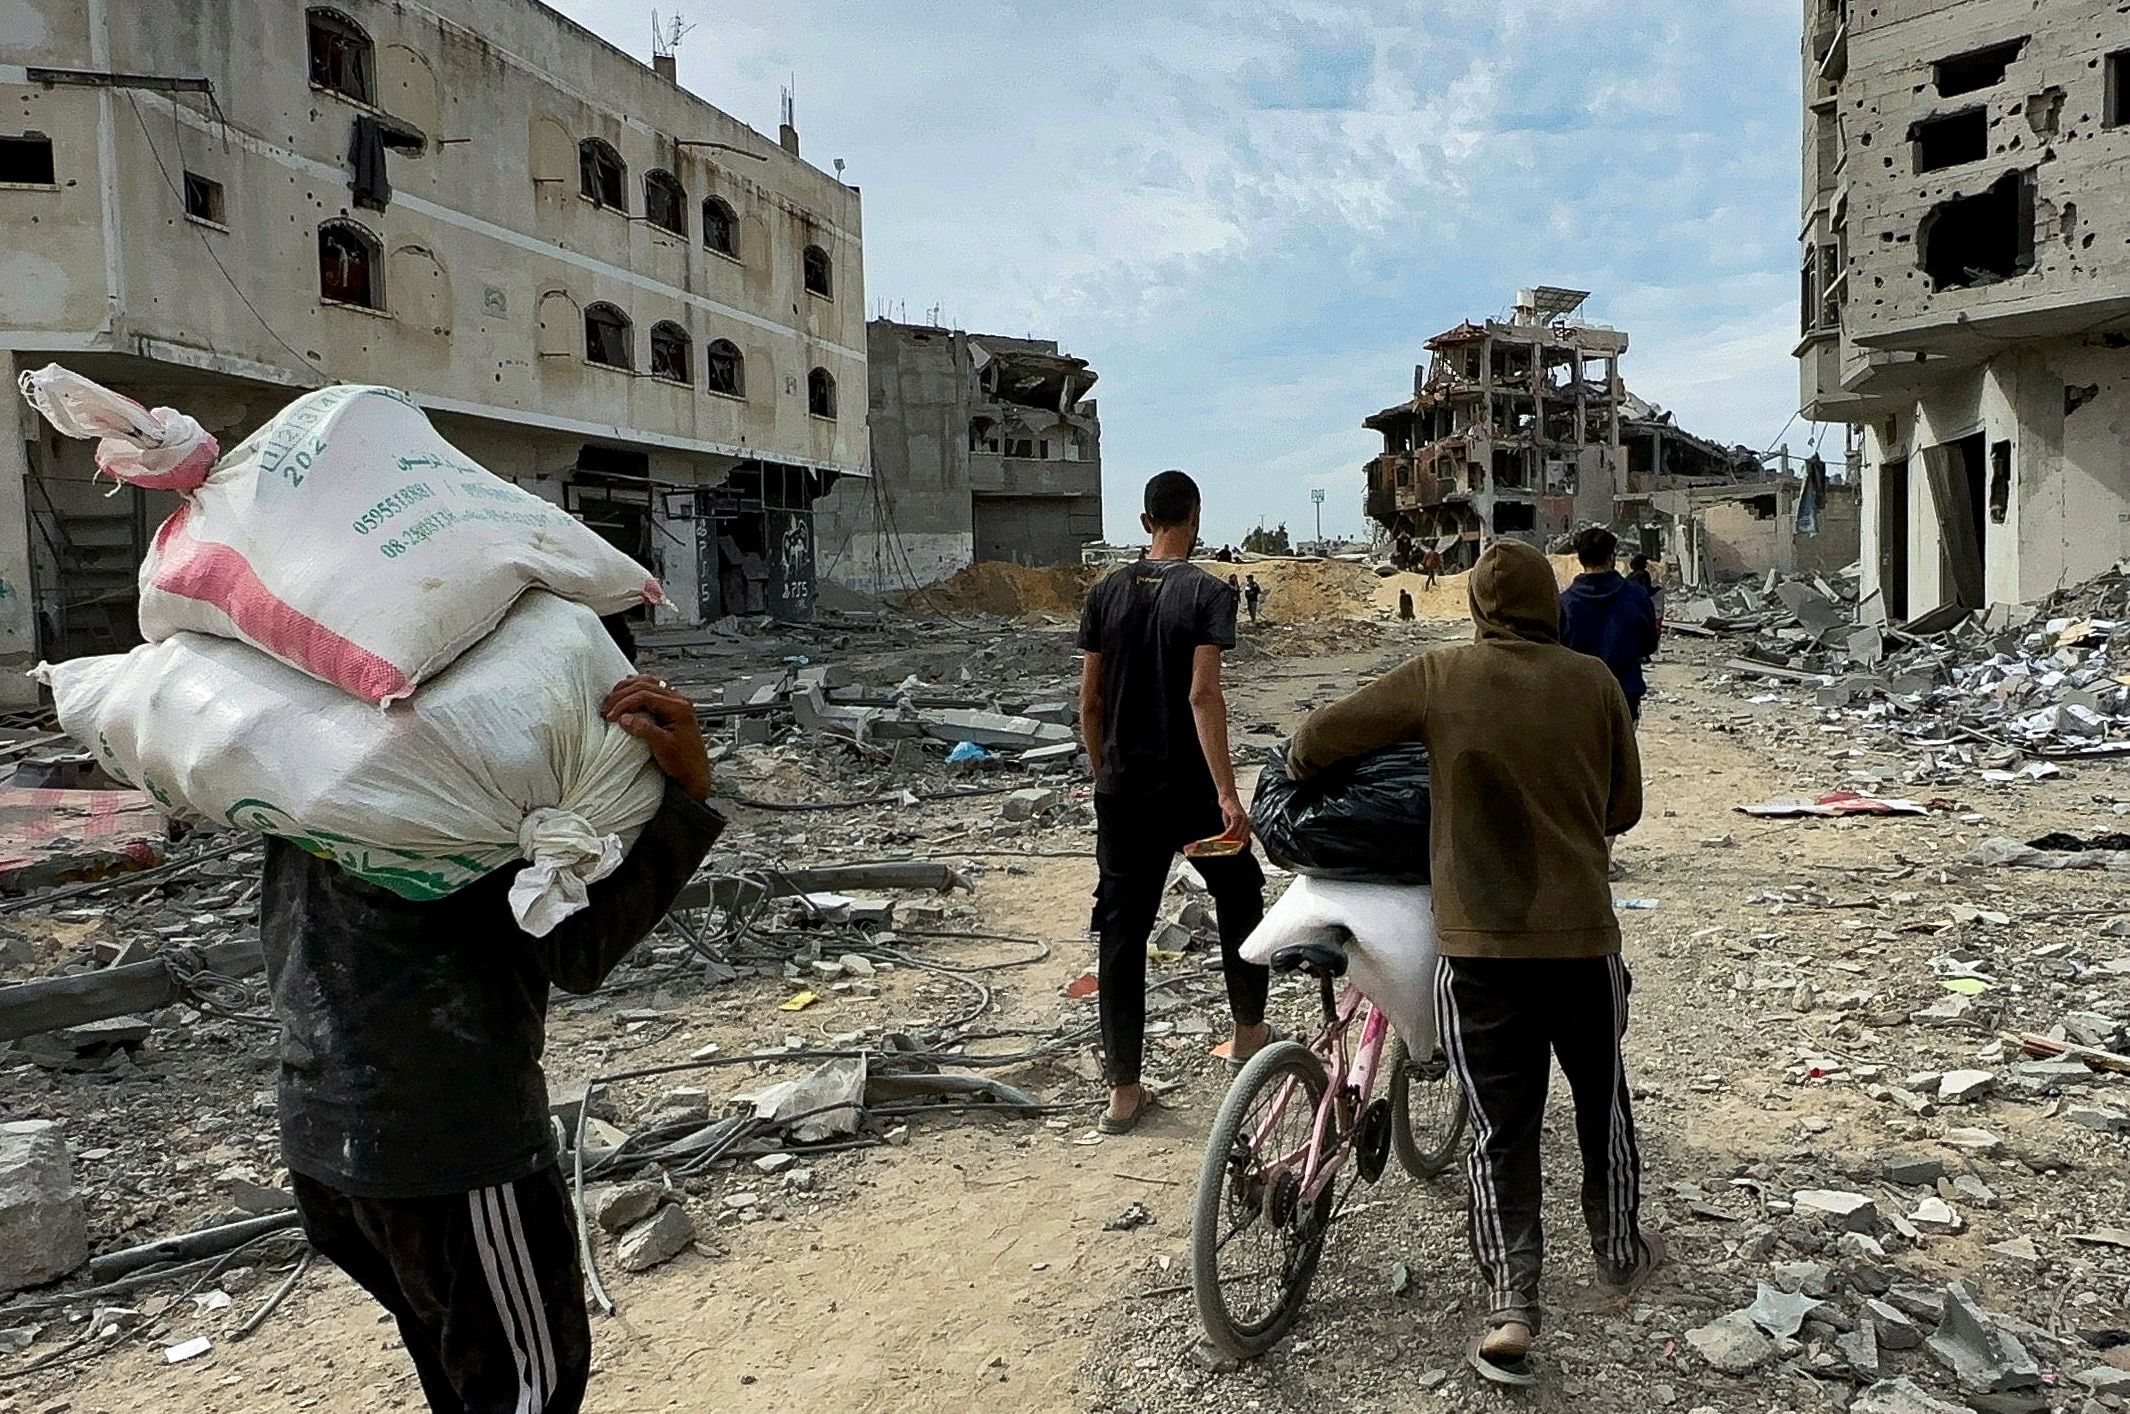 Gencatan senjata di Gaza untuk jeda kemanusiaan dalam pertempuran antara Israel dan Hamas akan diperpanjang.